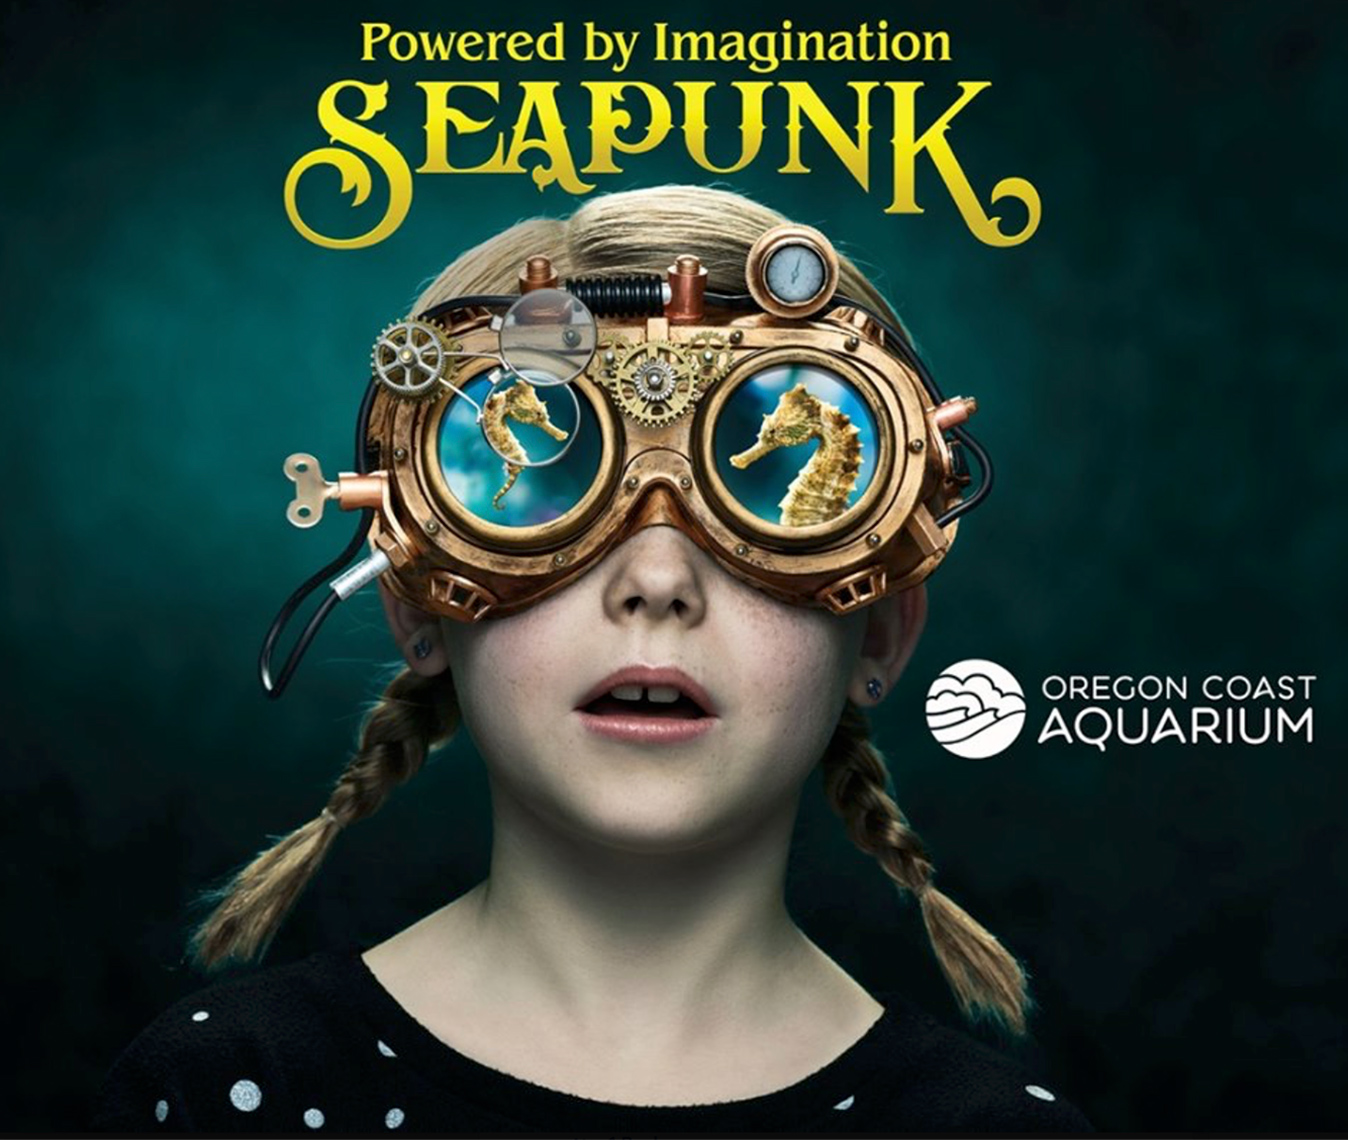 SeaPunk_ Mr Curiosity Studio_David Emmite 